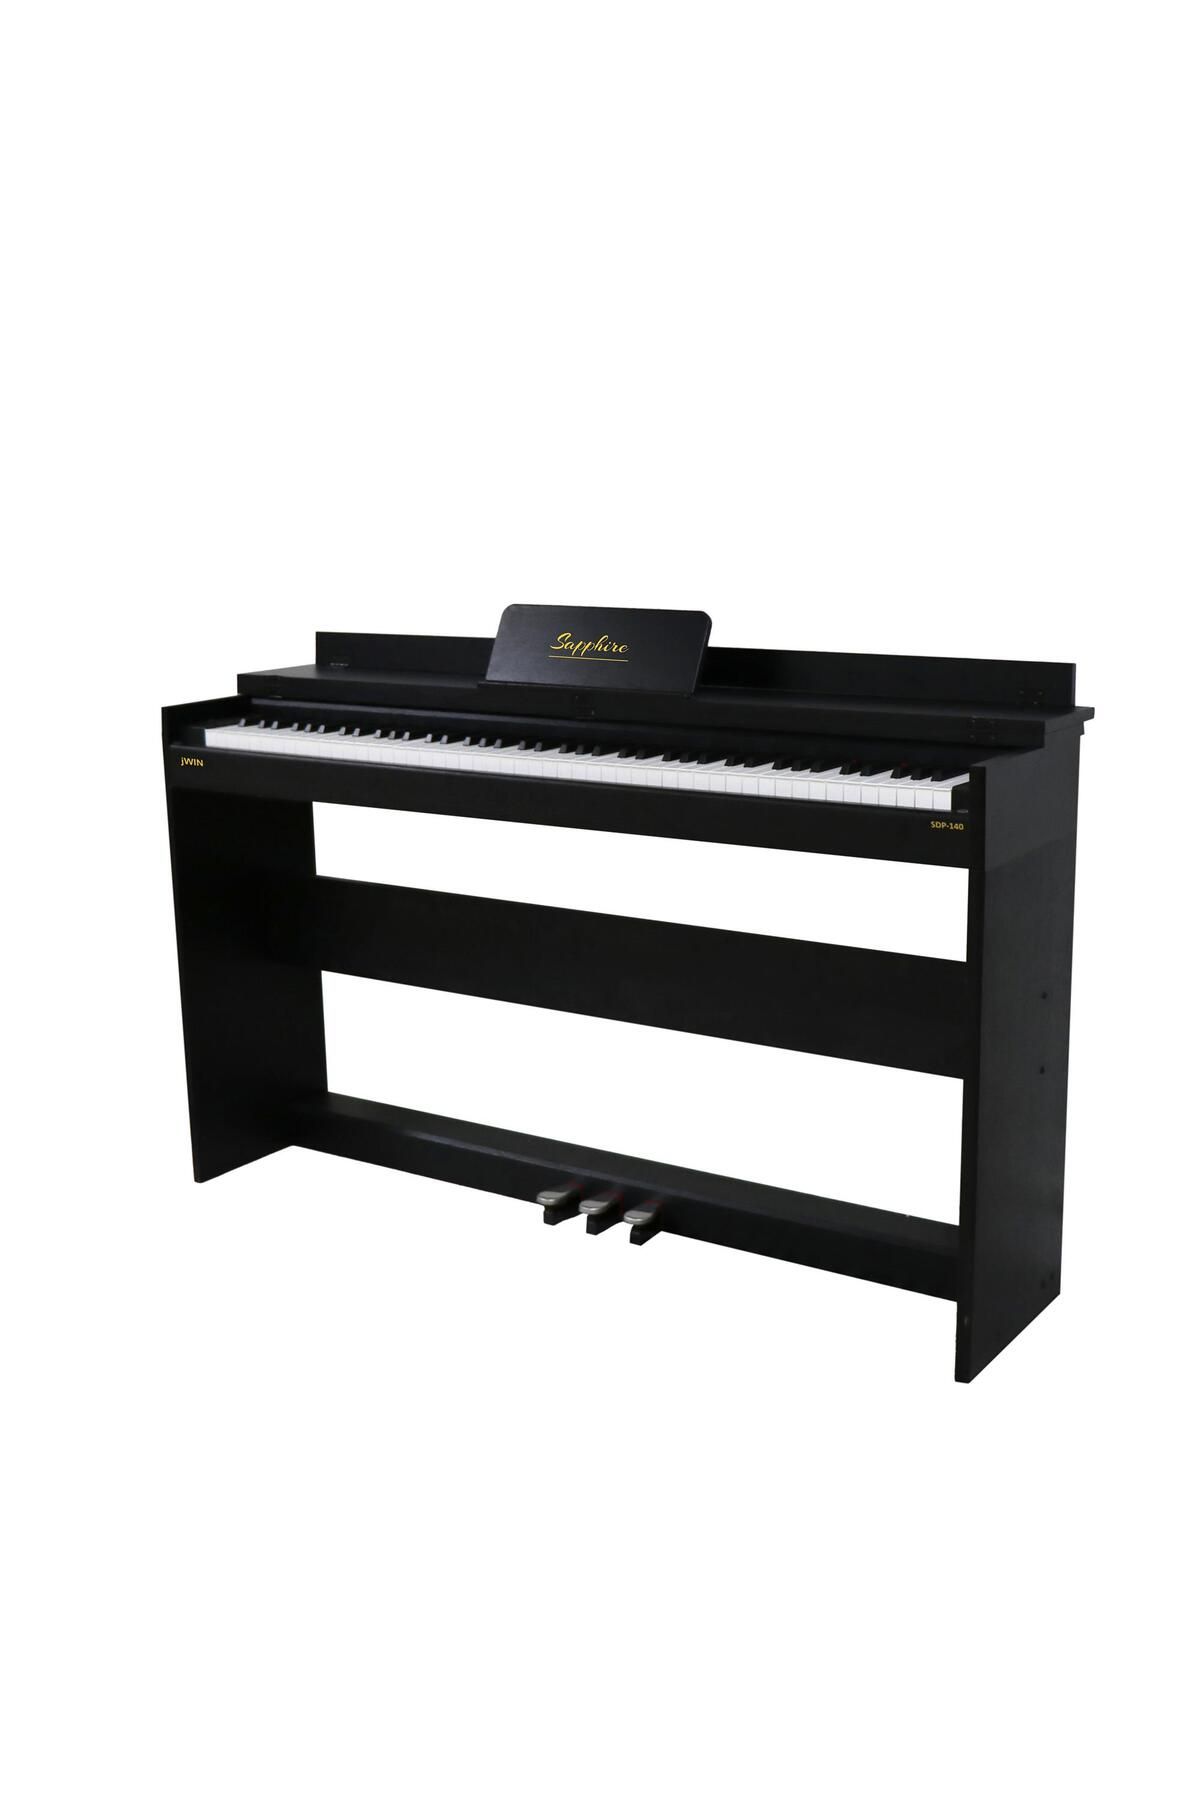 JWIN Sapphire Sdp-140bk 88 Tuşlu Çekiç Aksiyonlu Kapaklı Pro Dijital Piyano- Siyah